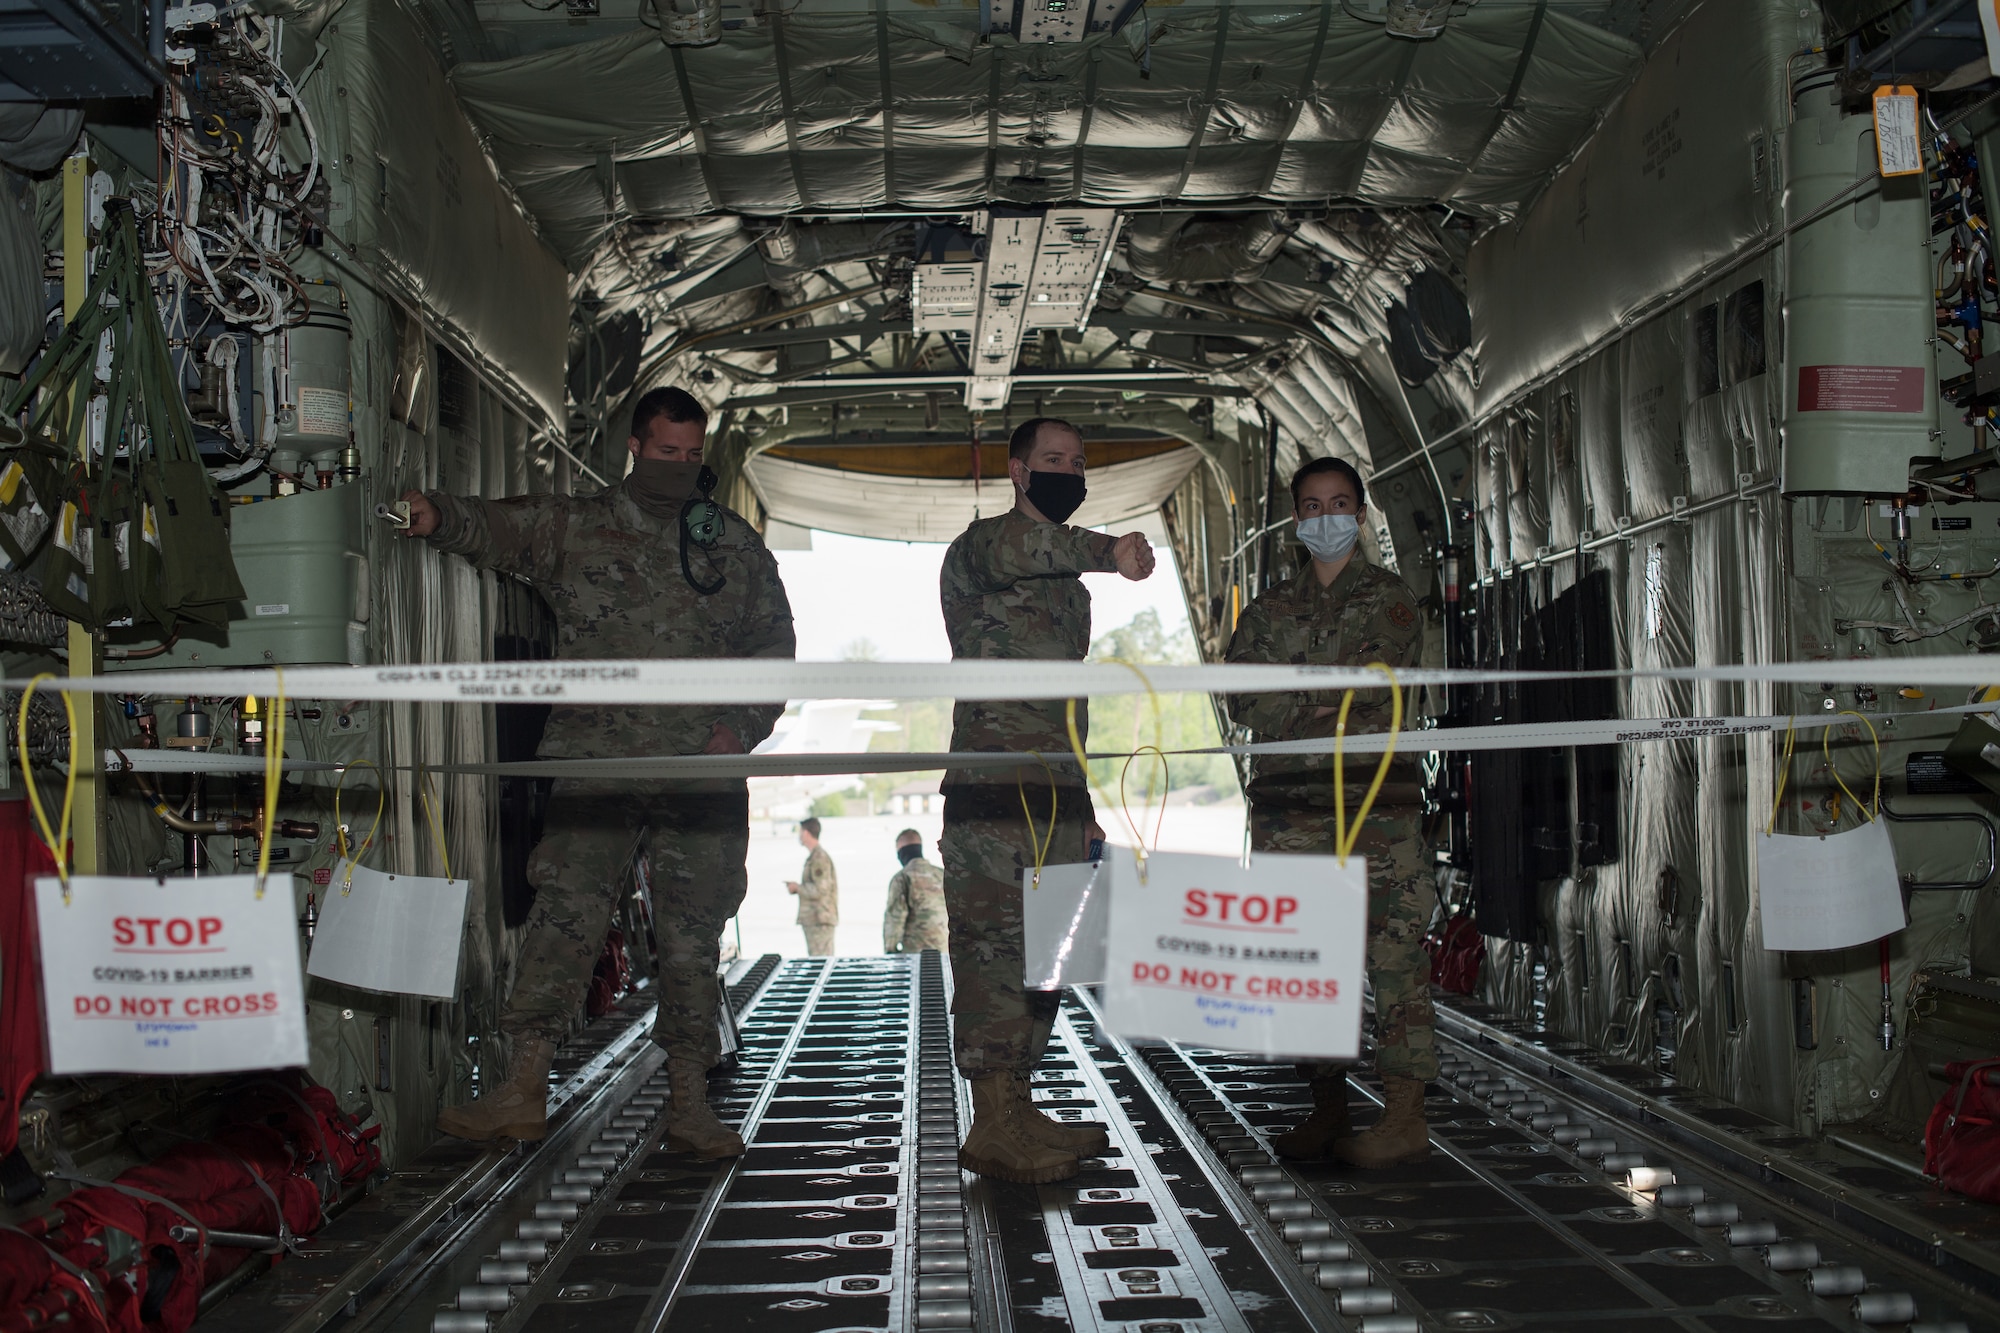 Three Airmen standing aboard an aircraft.